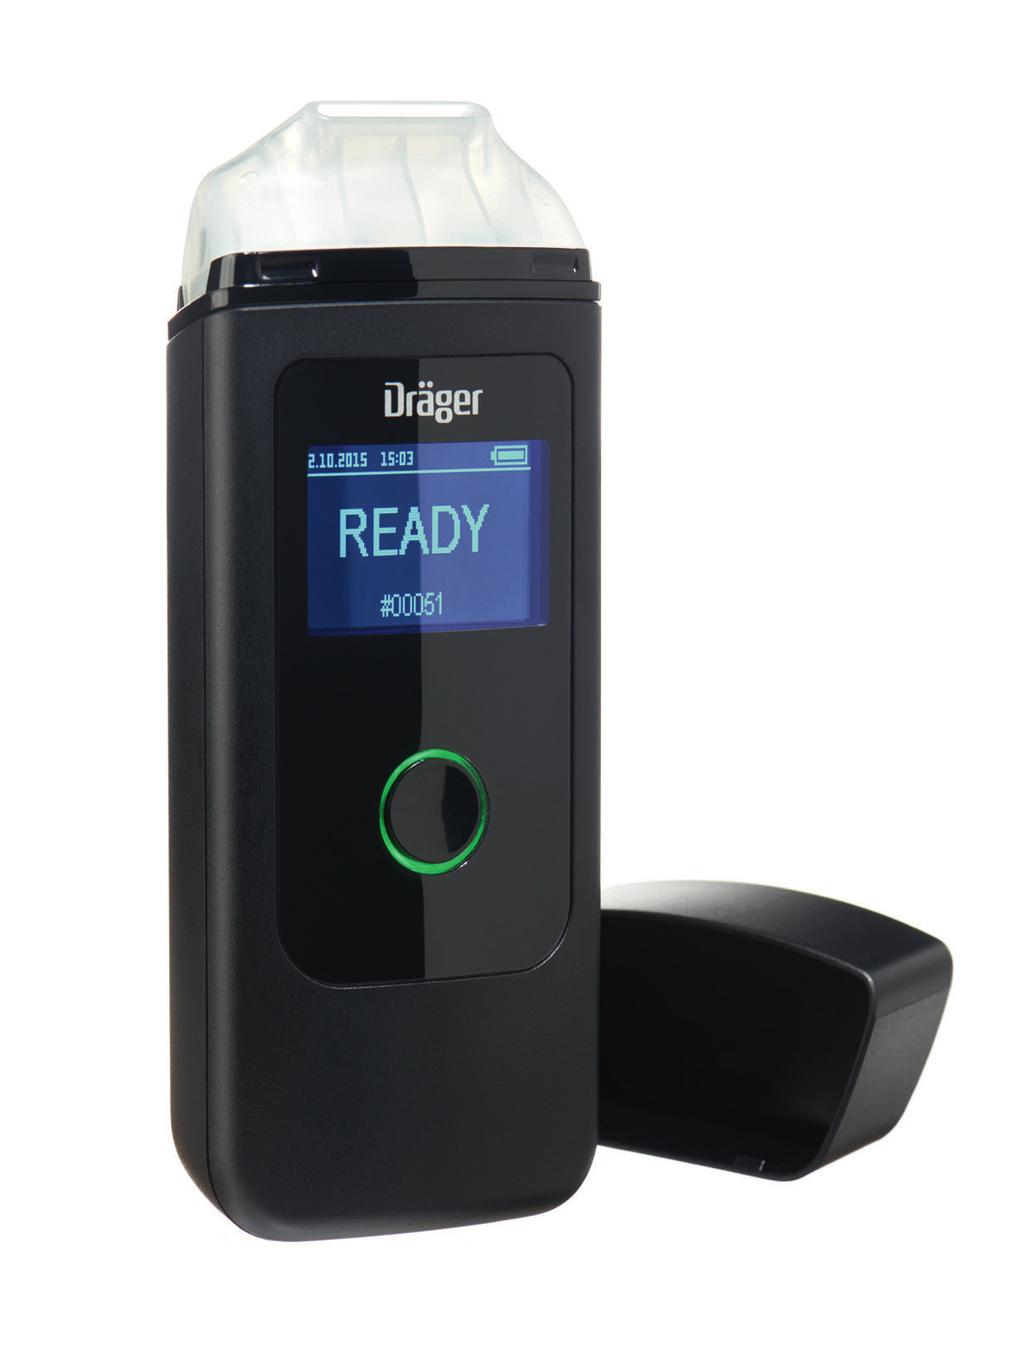 Dräger Alcotest 3820 Urządzenie do pomiaru zawartości alkoholu Analizator oddechu Dräger Alcotest 3820 pozwala odpowiedzialnym kierowcom zbadać zawartość alkoholu w wydychanym powietrzu i upewnić